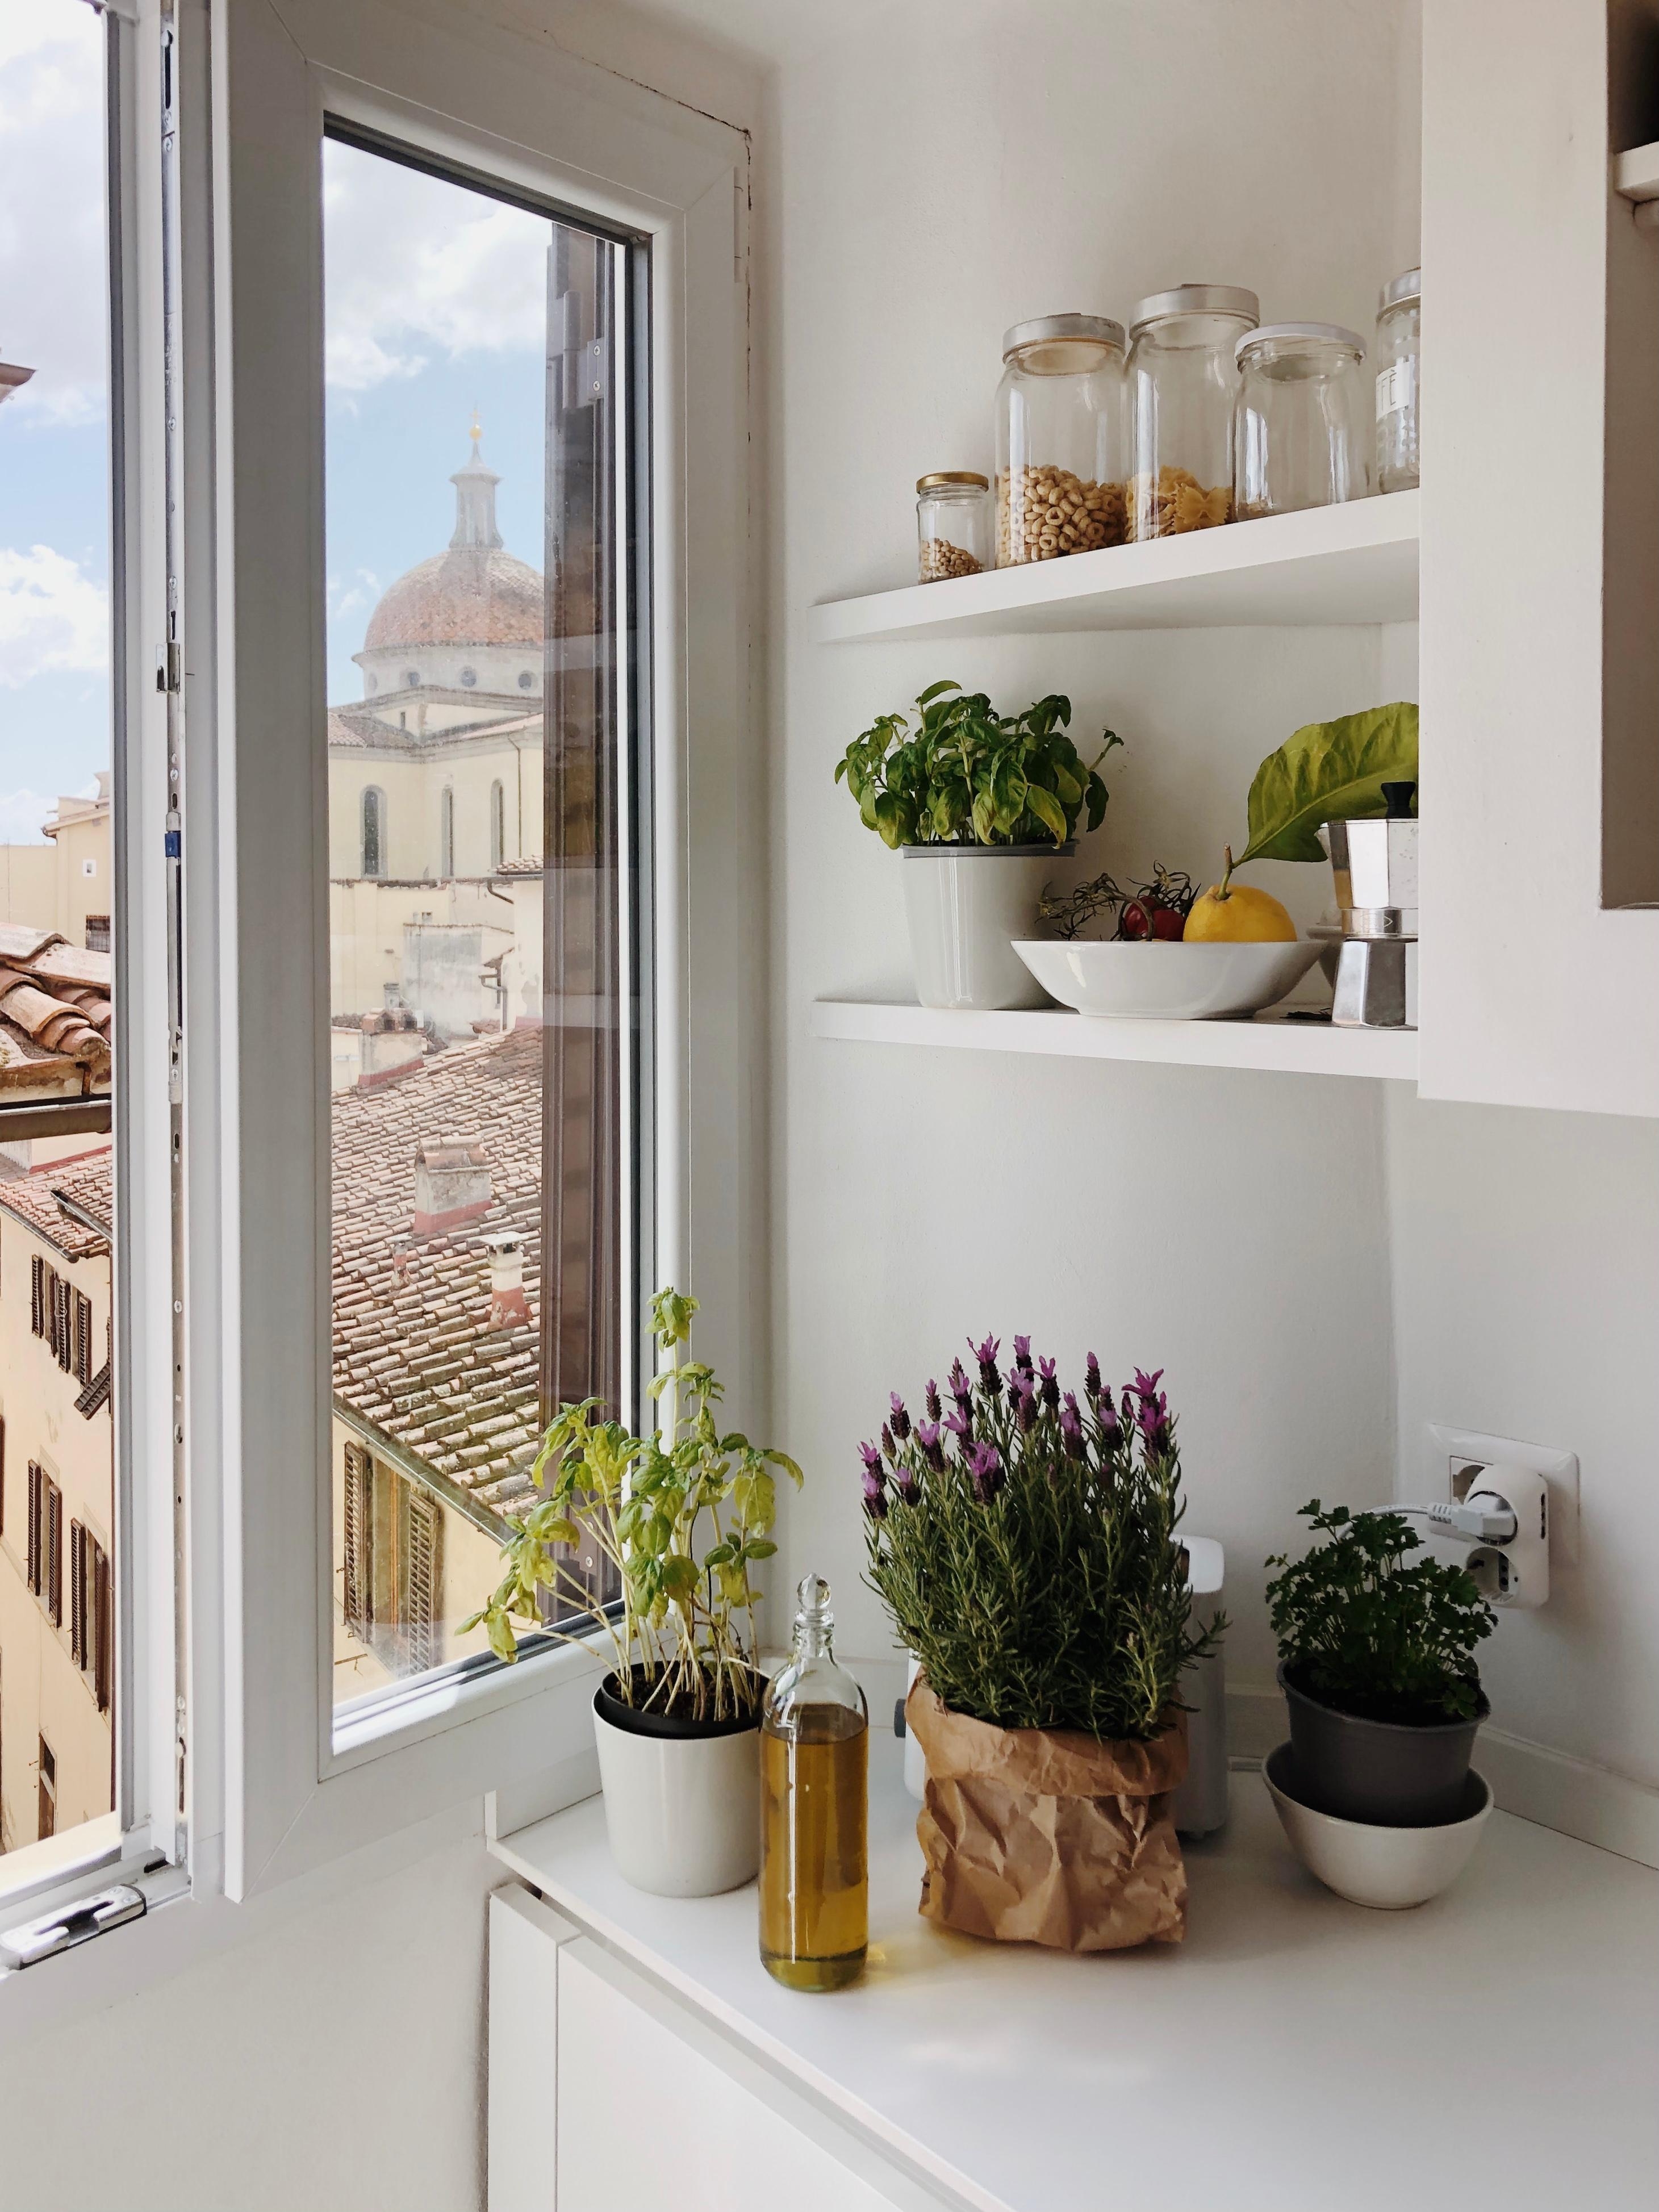 Meine Küche in meinem kleinen florentinischen Appartment 🌿 #wohnen #florenz #interior #ecke #pflanzen #küche